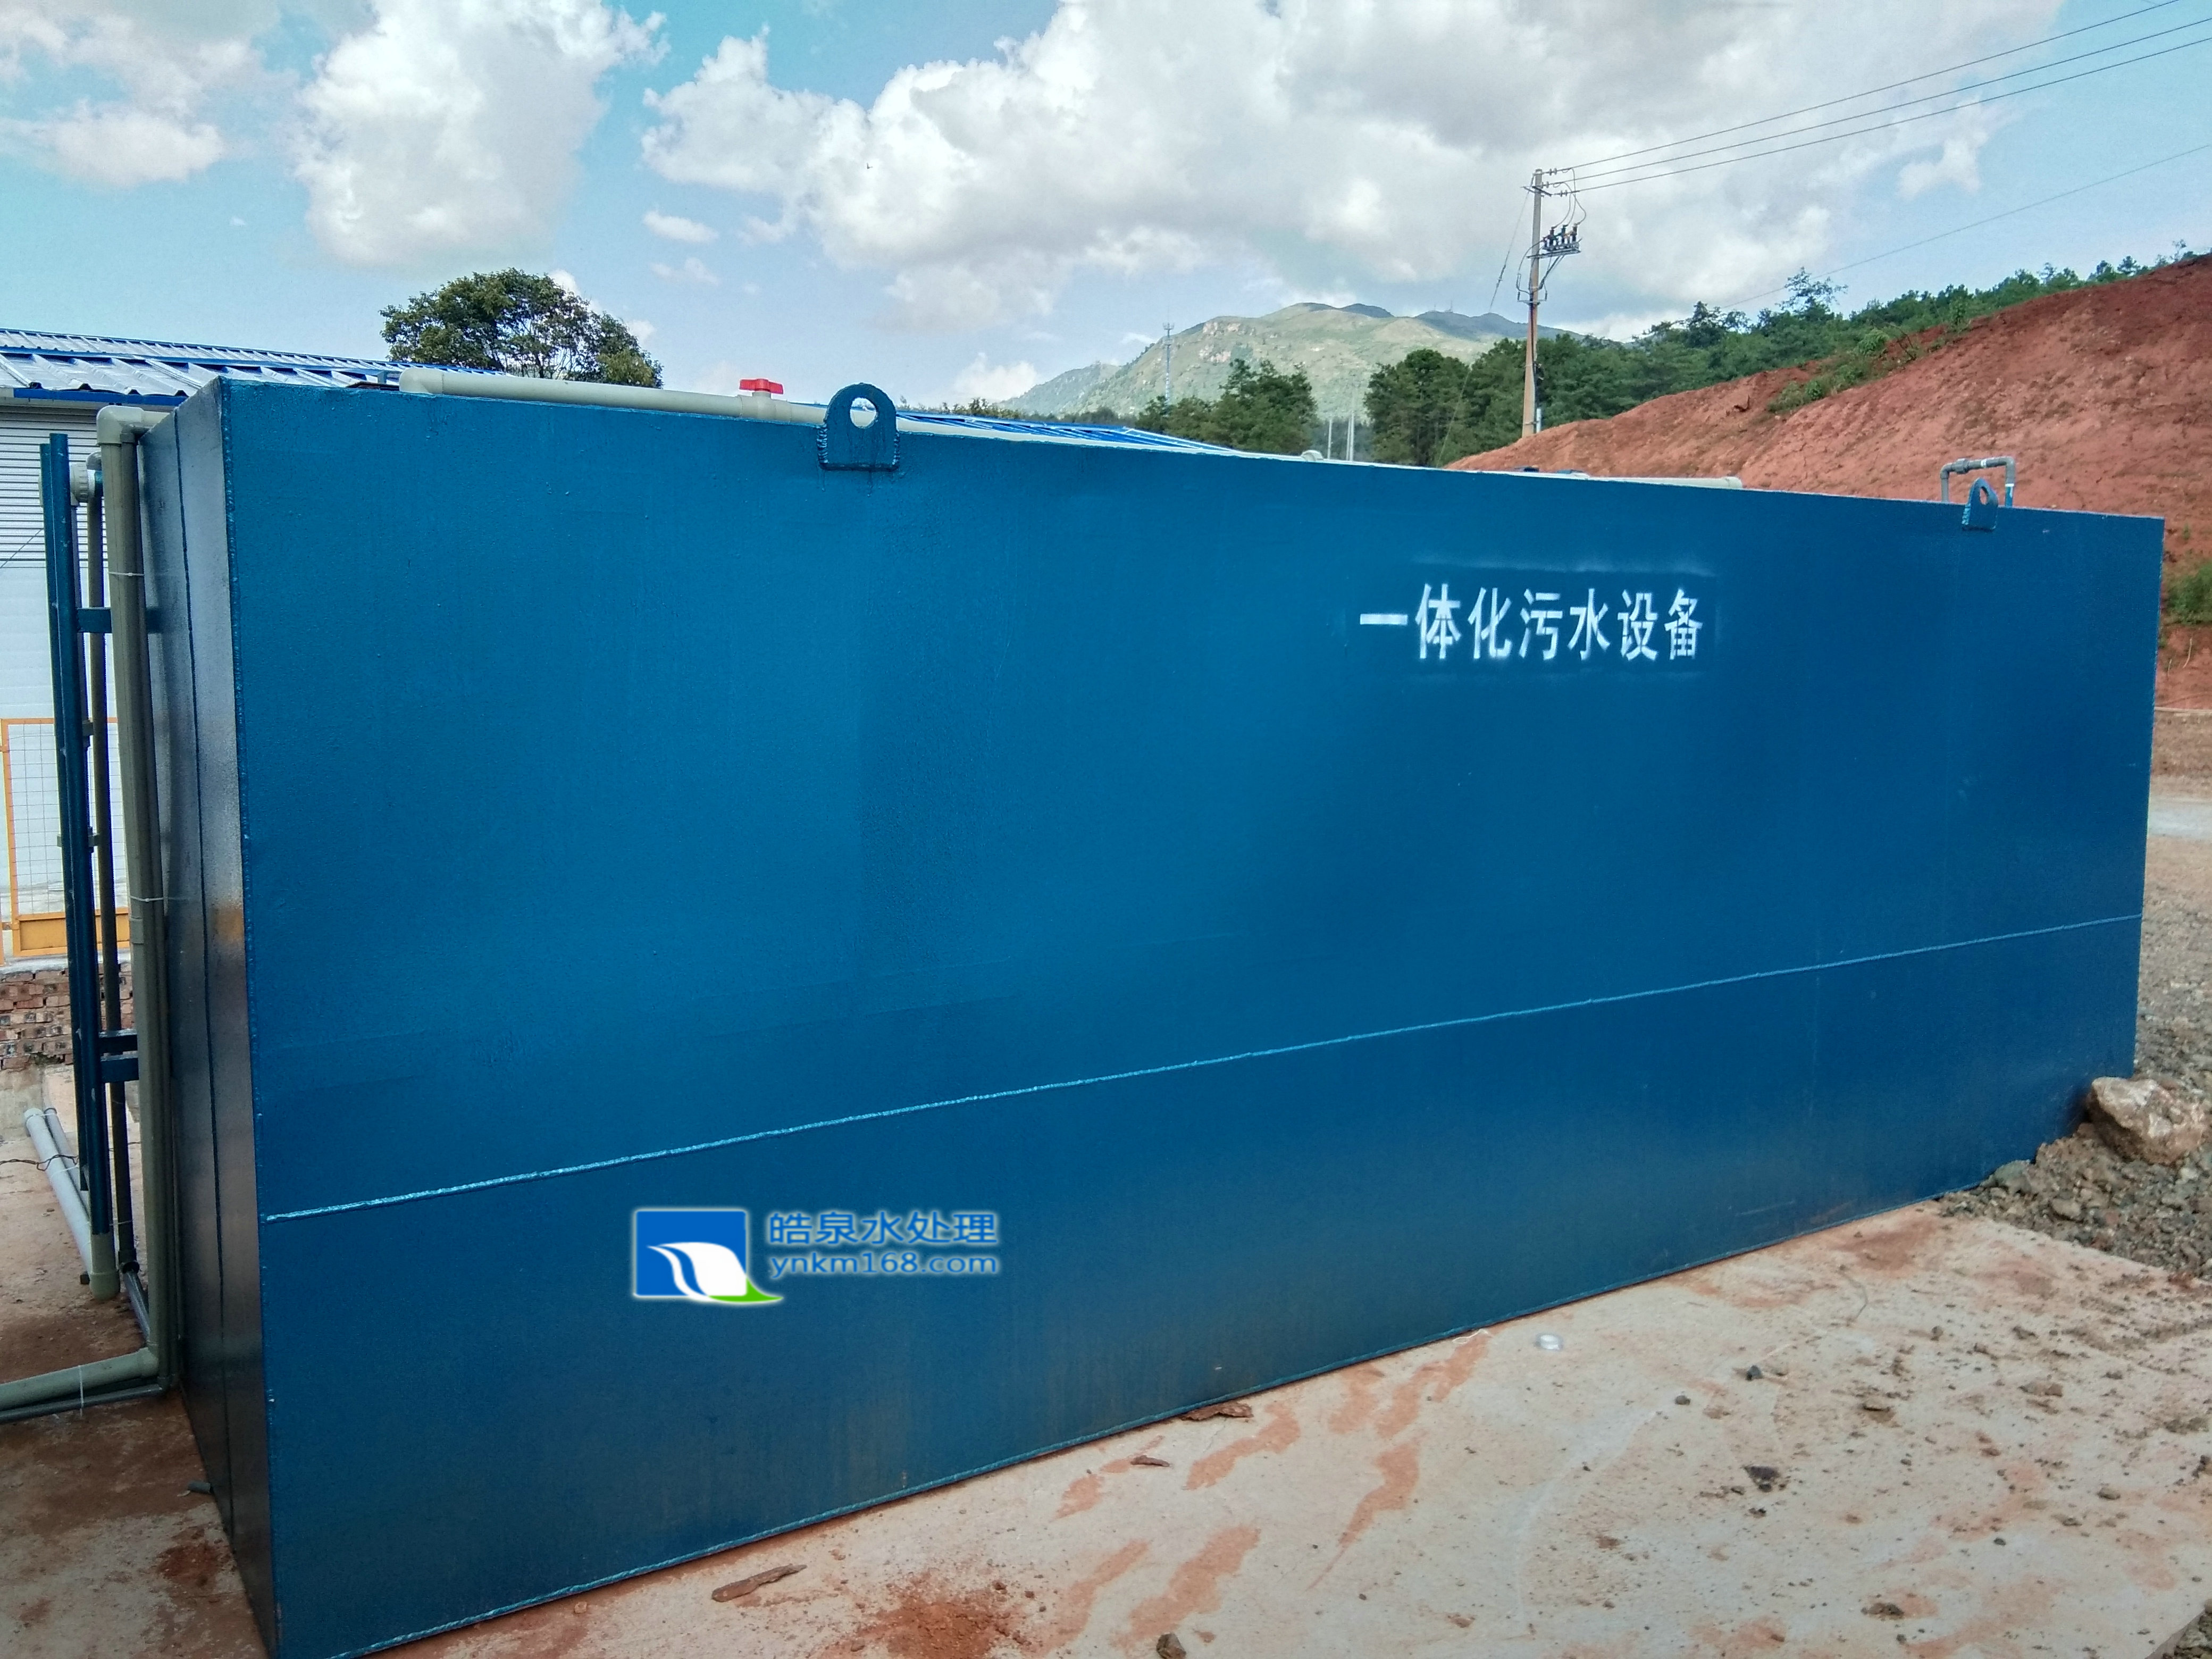 昆明智慧型一体化污水处理设备 生活污水处理设备应用在云南滇中引水工程昆明段7标